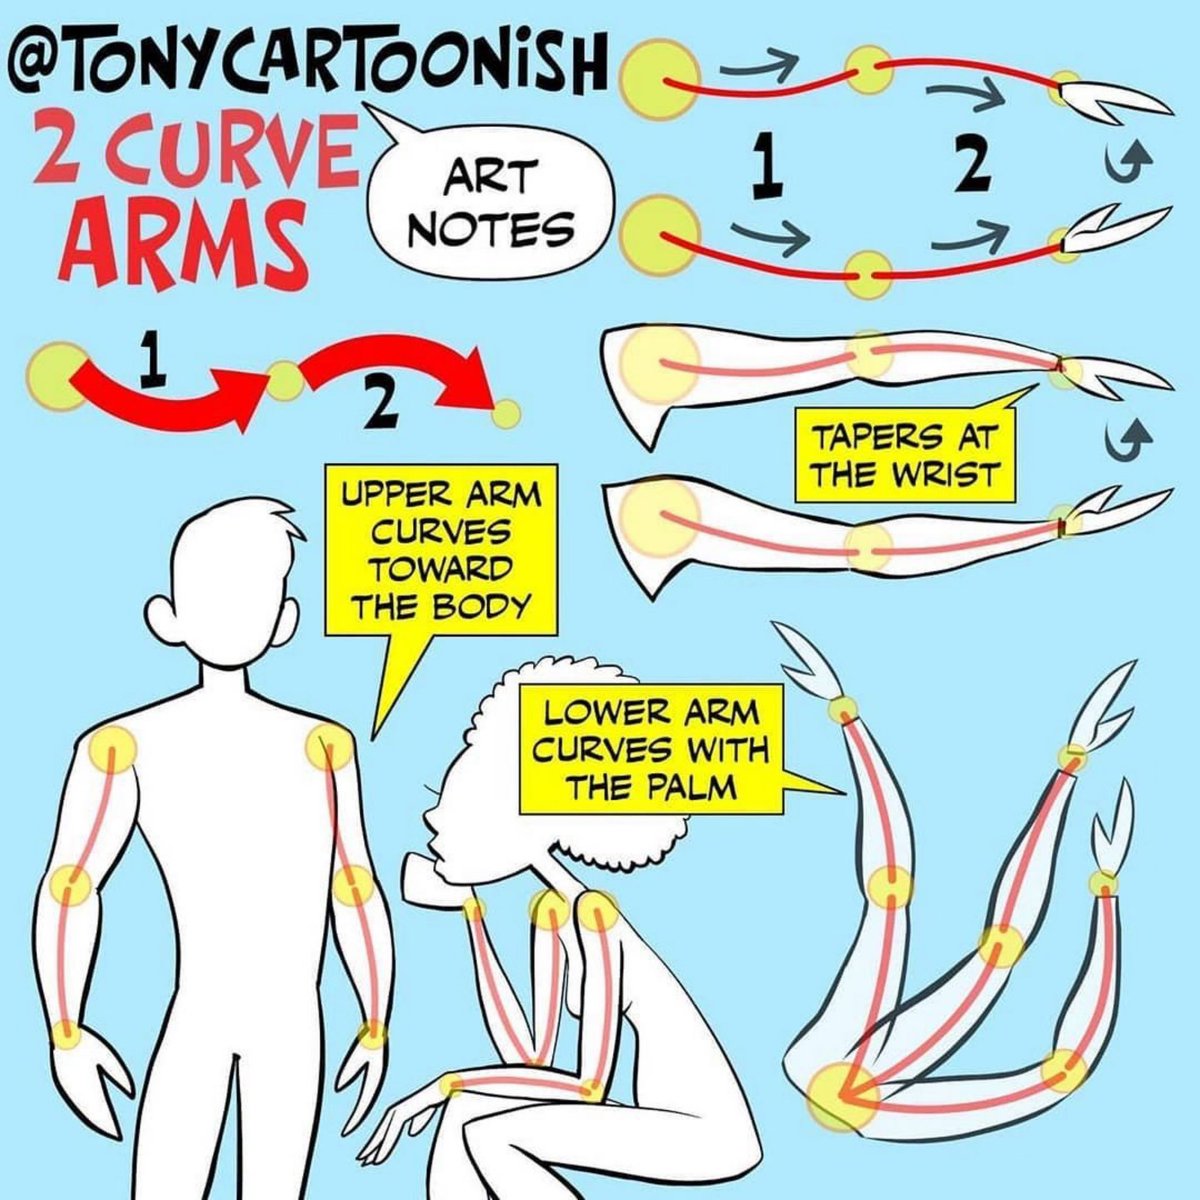 2 Curve Arm Guide Method. 

#tonycartoonish #tonycartoonishartnotes #artnotes #arttips #drawingtips #tutorial #arttutorial #arttutorials #howtodraw #howto #howtodoodle #tcartnotes